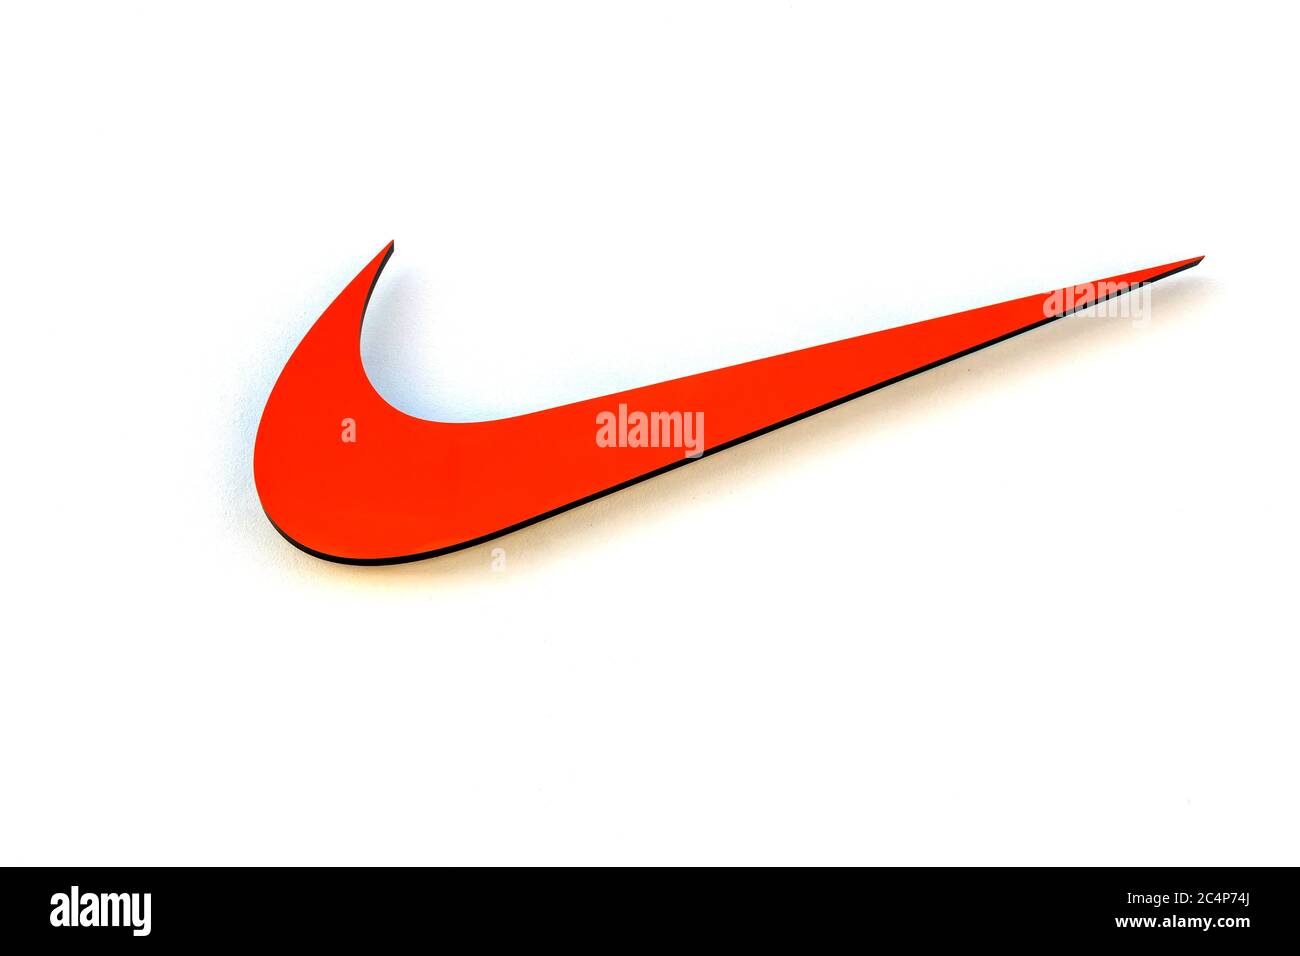 Herzogenaurach : logotipo Nike firma el 13 DE AGOSTO de 2017 en ALEMANIA Nike Inc. Es una corporación multinacional estadounidense que se dedica a la venta de calzado Fotografía de stock - Alamy